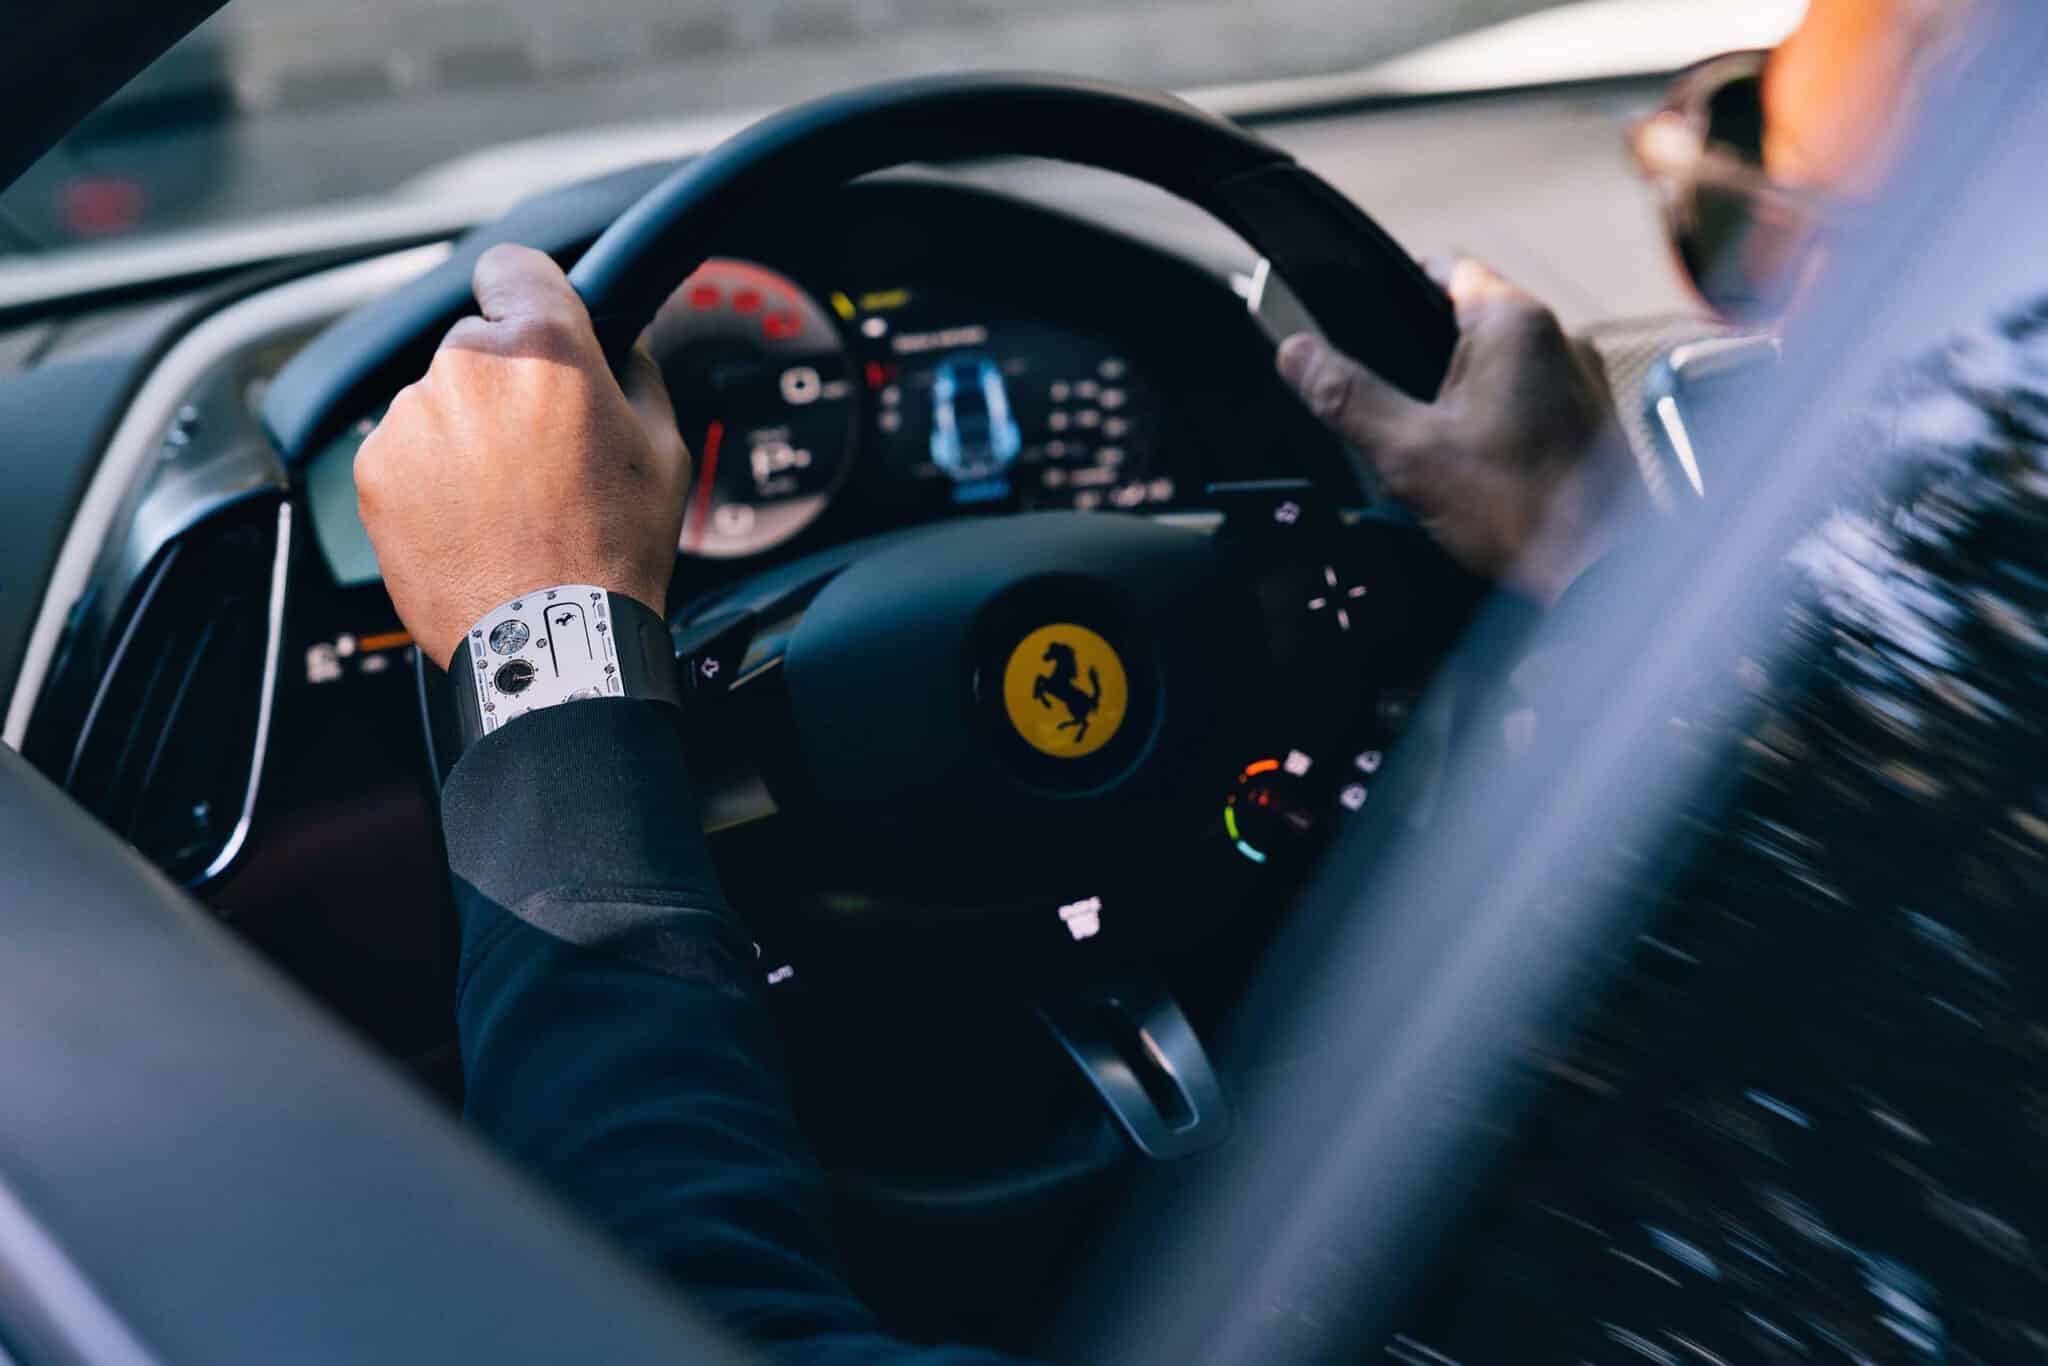 Richard Mille e Ferrari: ecco l'orologio più sottile al mondo da 1,7 milioni di dollari